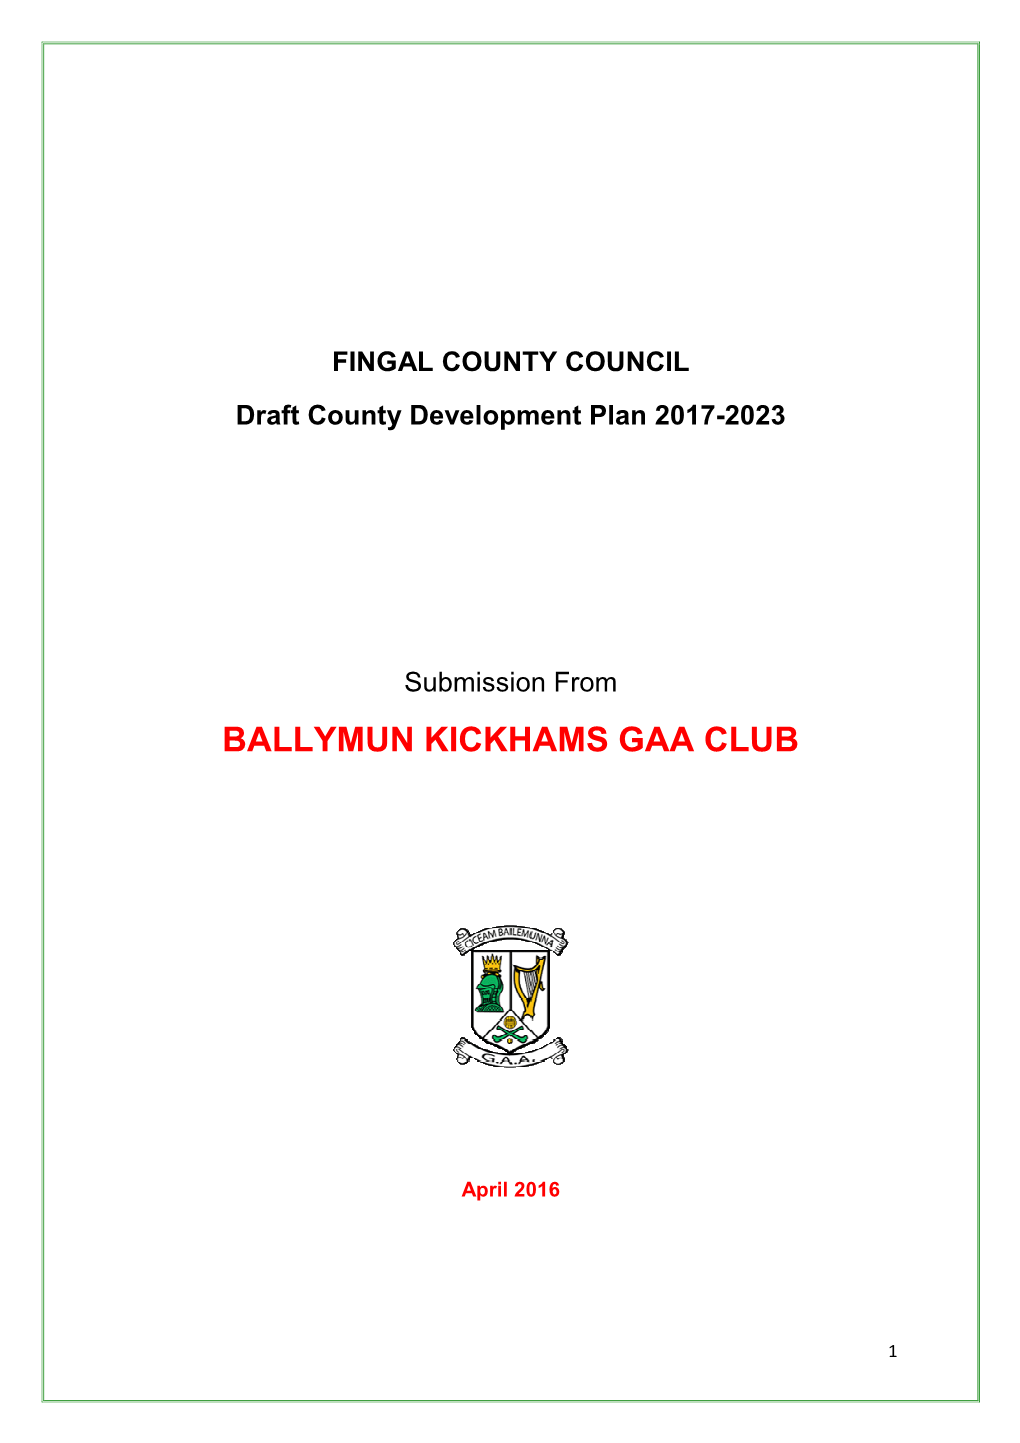 Ballymun Kickhams Fingal County Development Plan